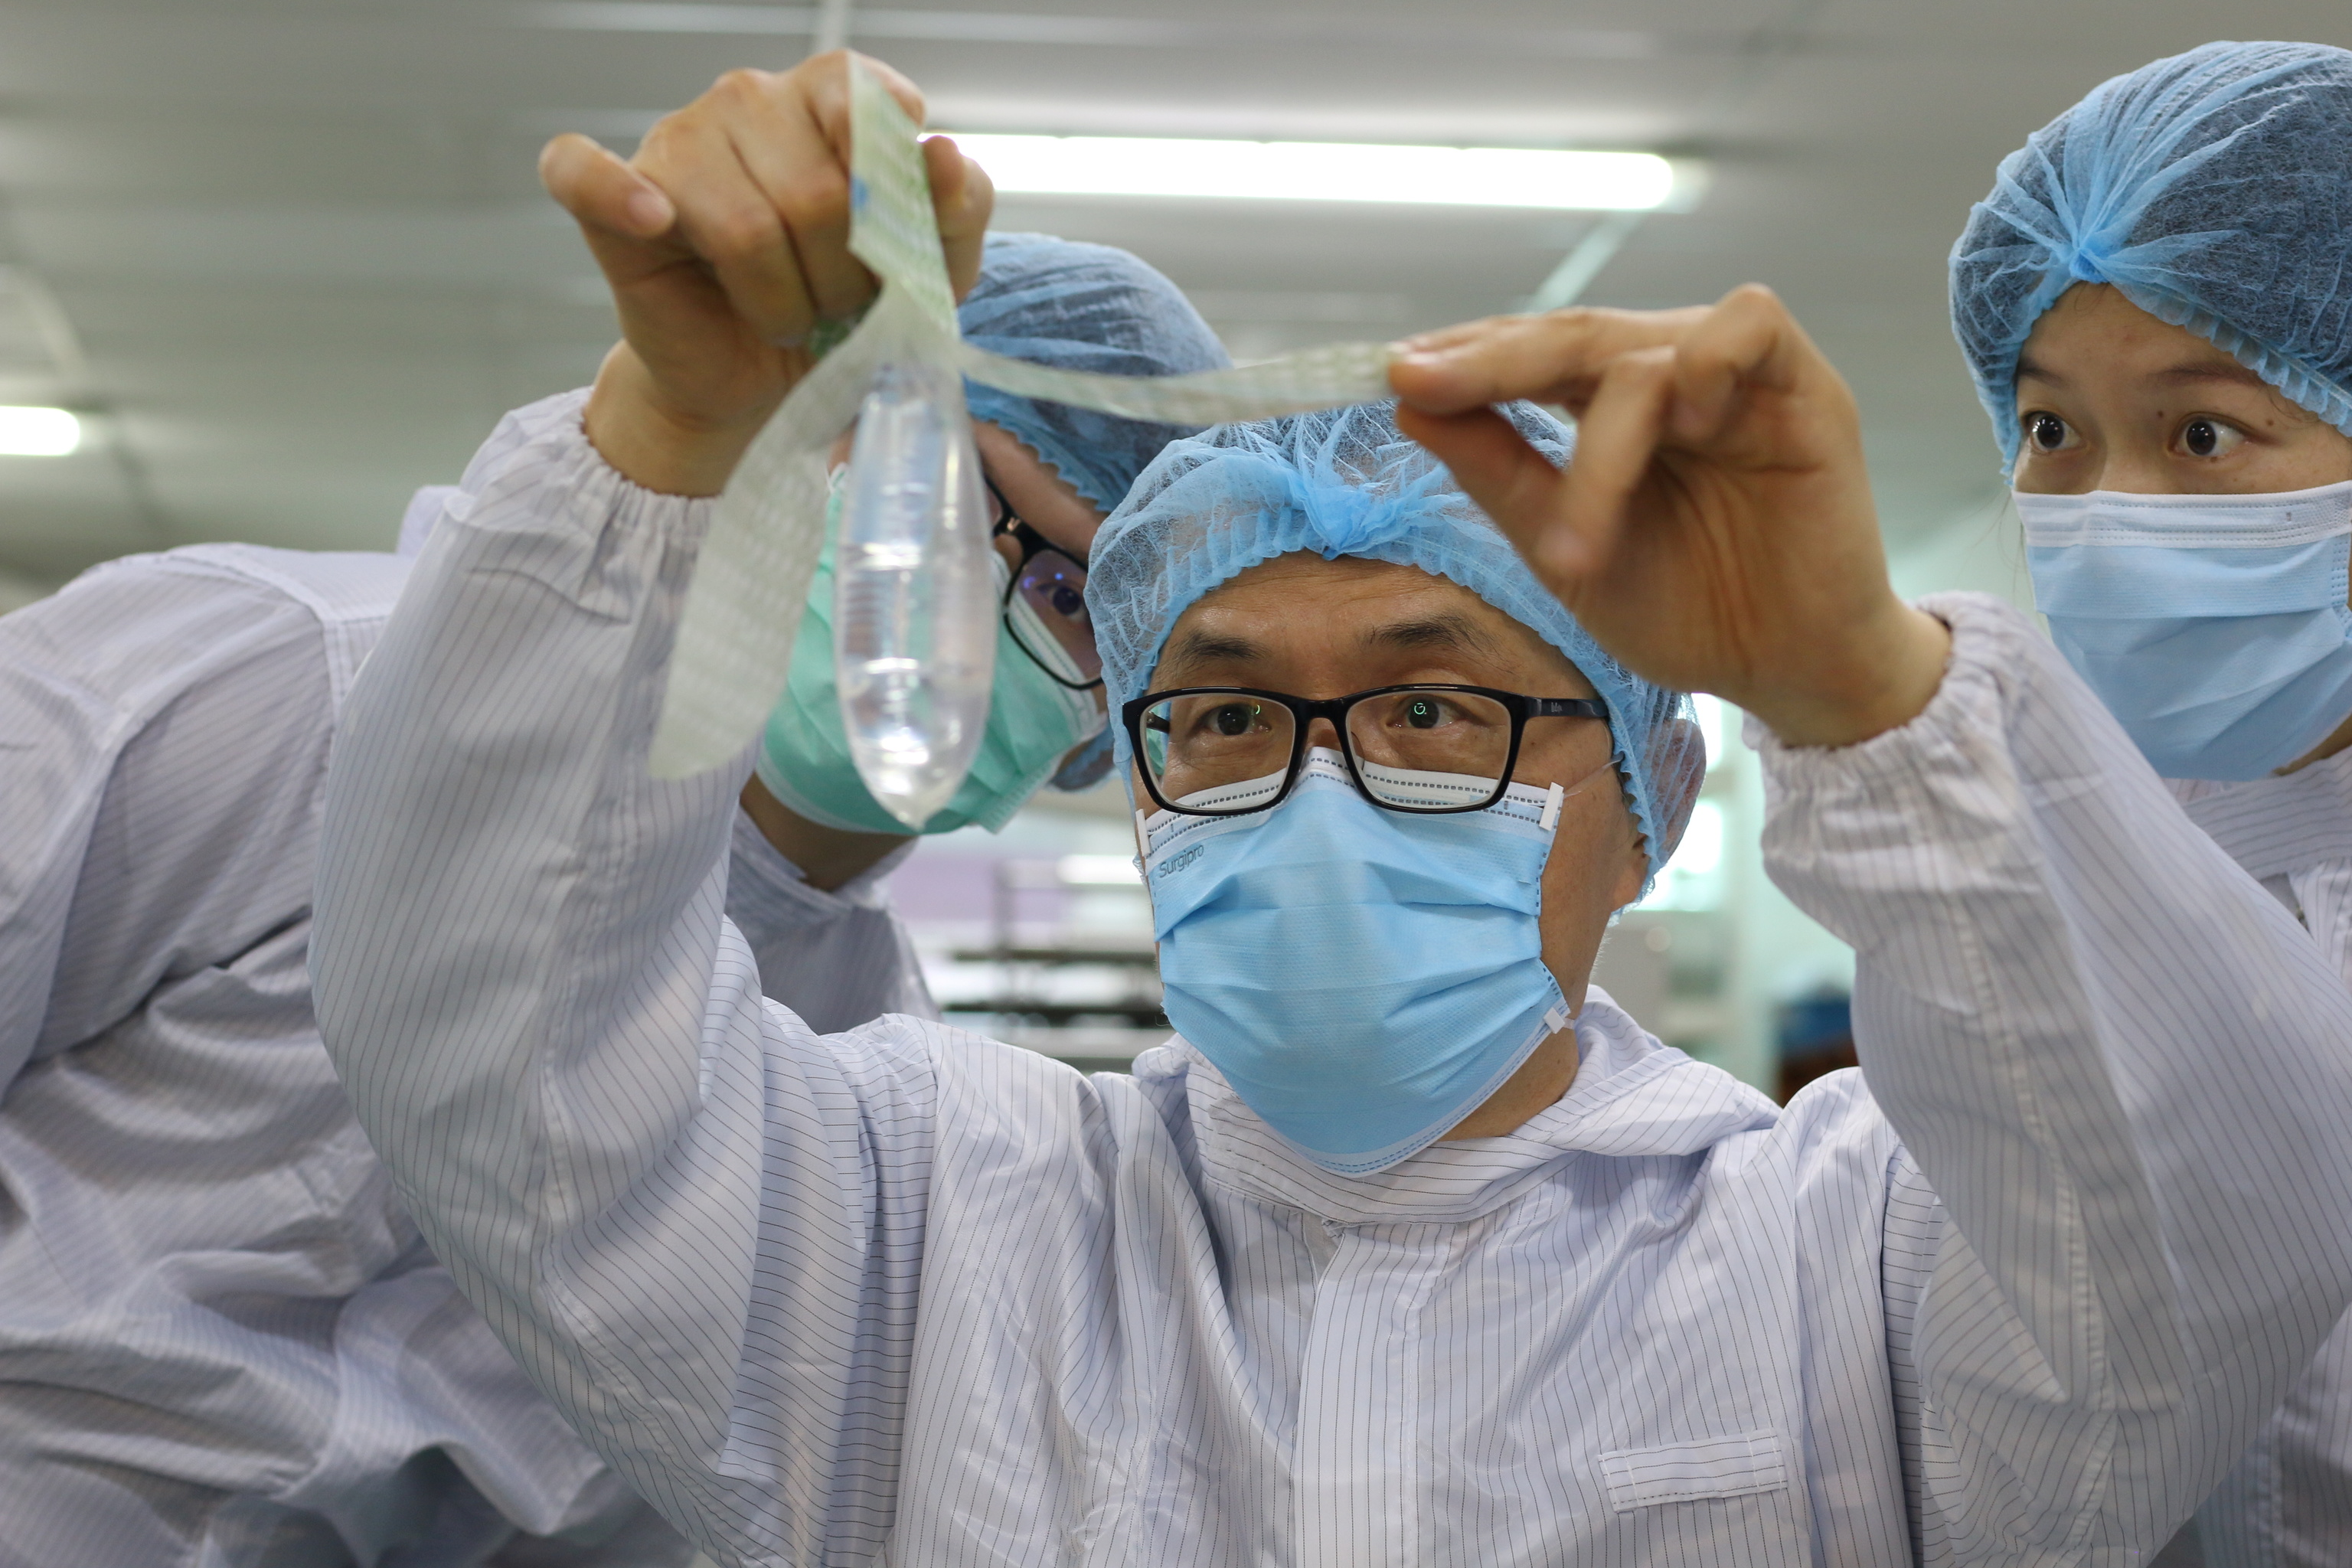 El fundador e inventor del preservativo unisex Wondaleaf, John Tang Ing Ching, inspecciona el preservativo unisex en su fábrica de Sibu, Malasia,